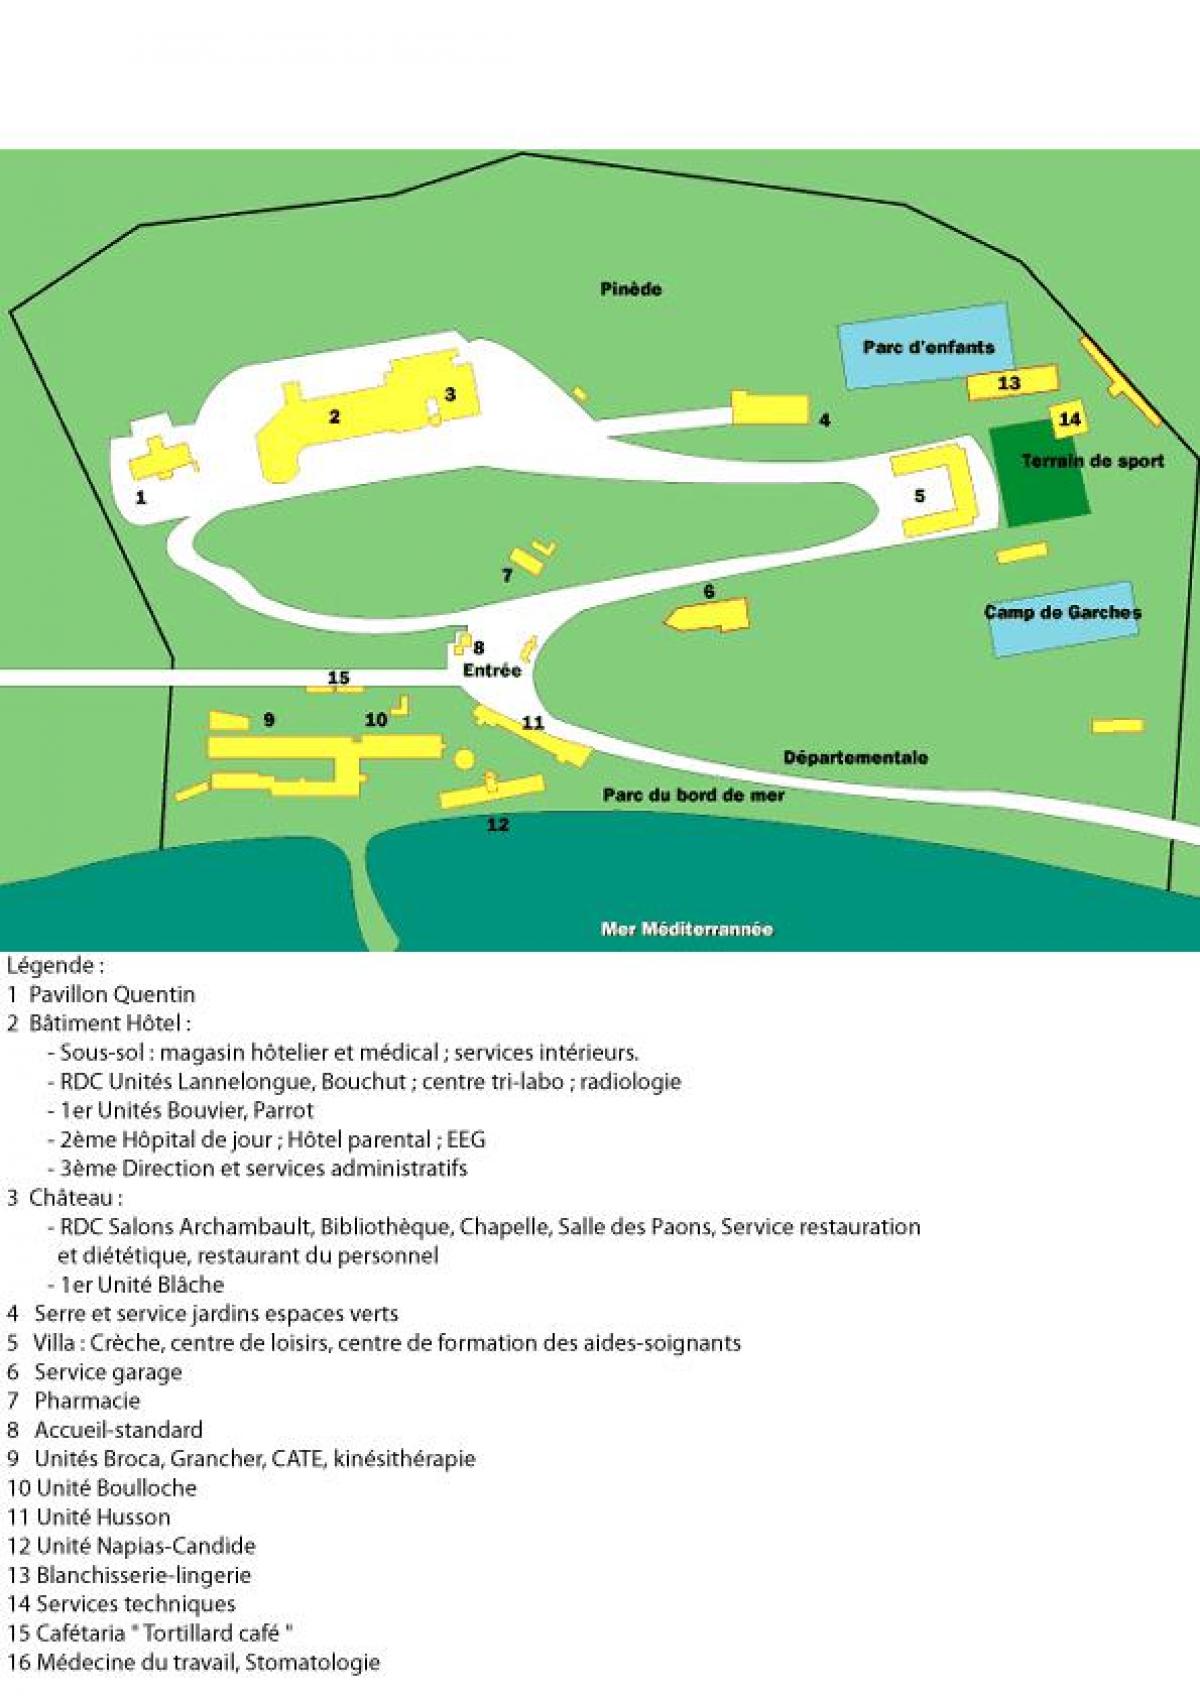 Harta San Salvadour spital